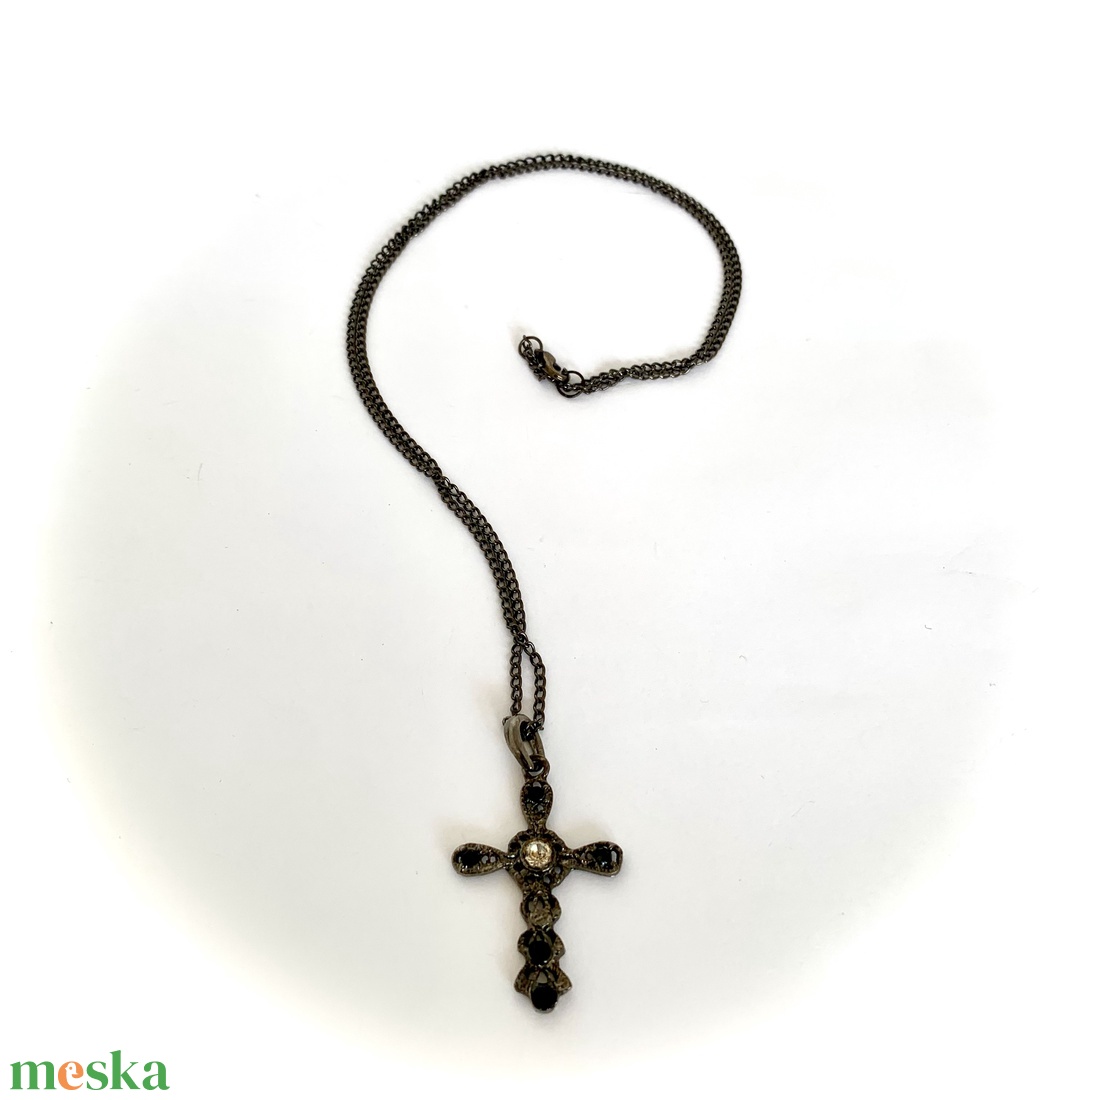 Fekete kereszt - Régi vintage nyaklánc 1980-as évekből, retro lánc, ékszer, fekete fém lánc kereszttel - ékszer - nyaklánc - hosszú nyaklánc - Meska.hu